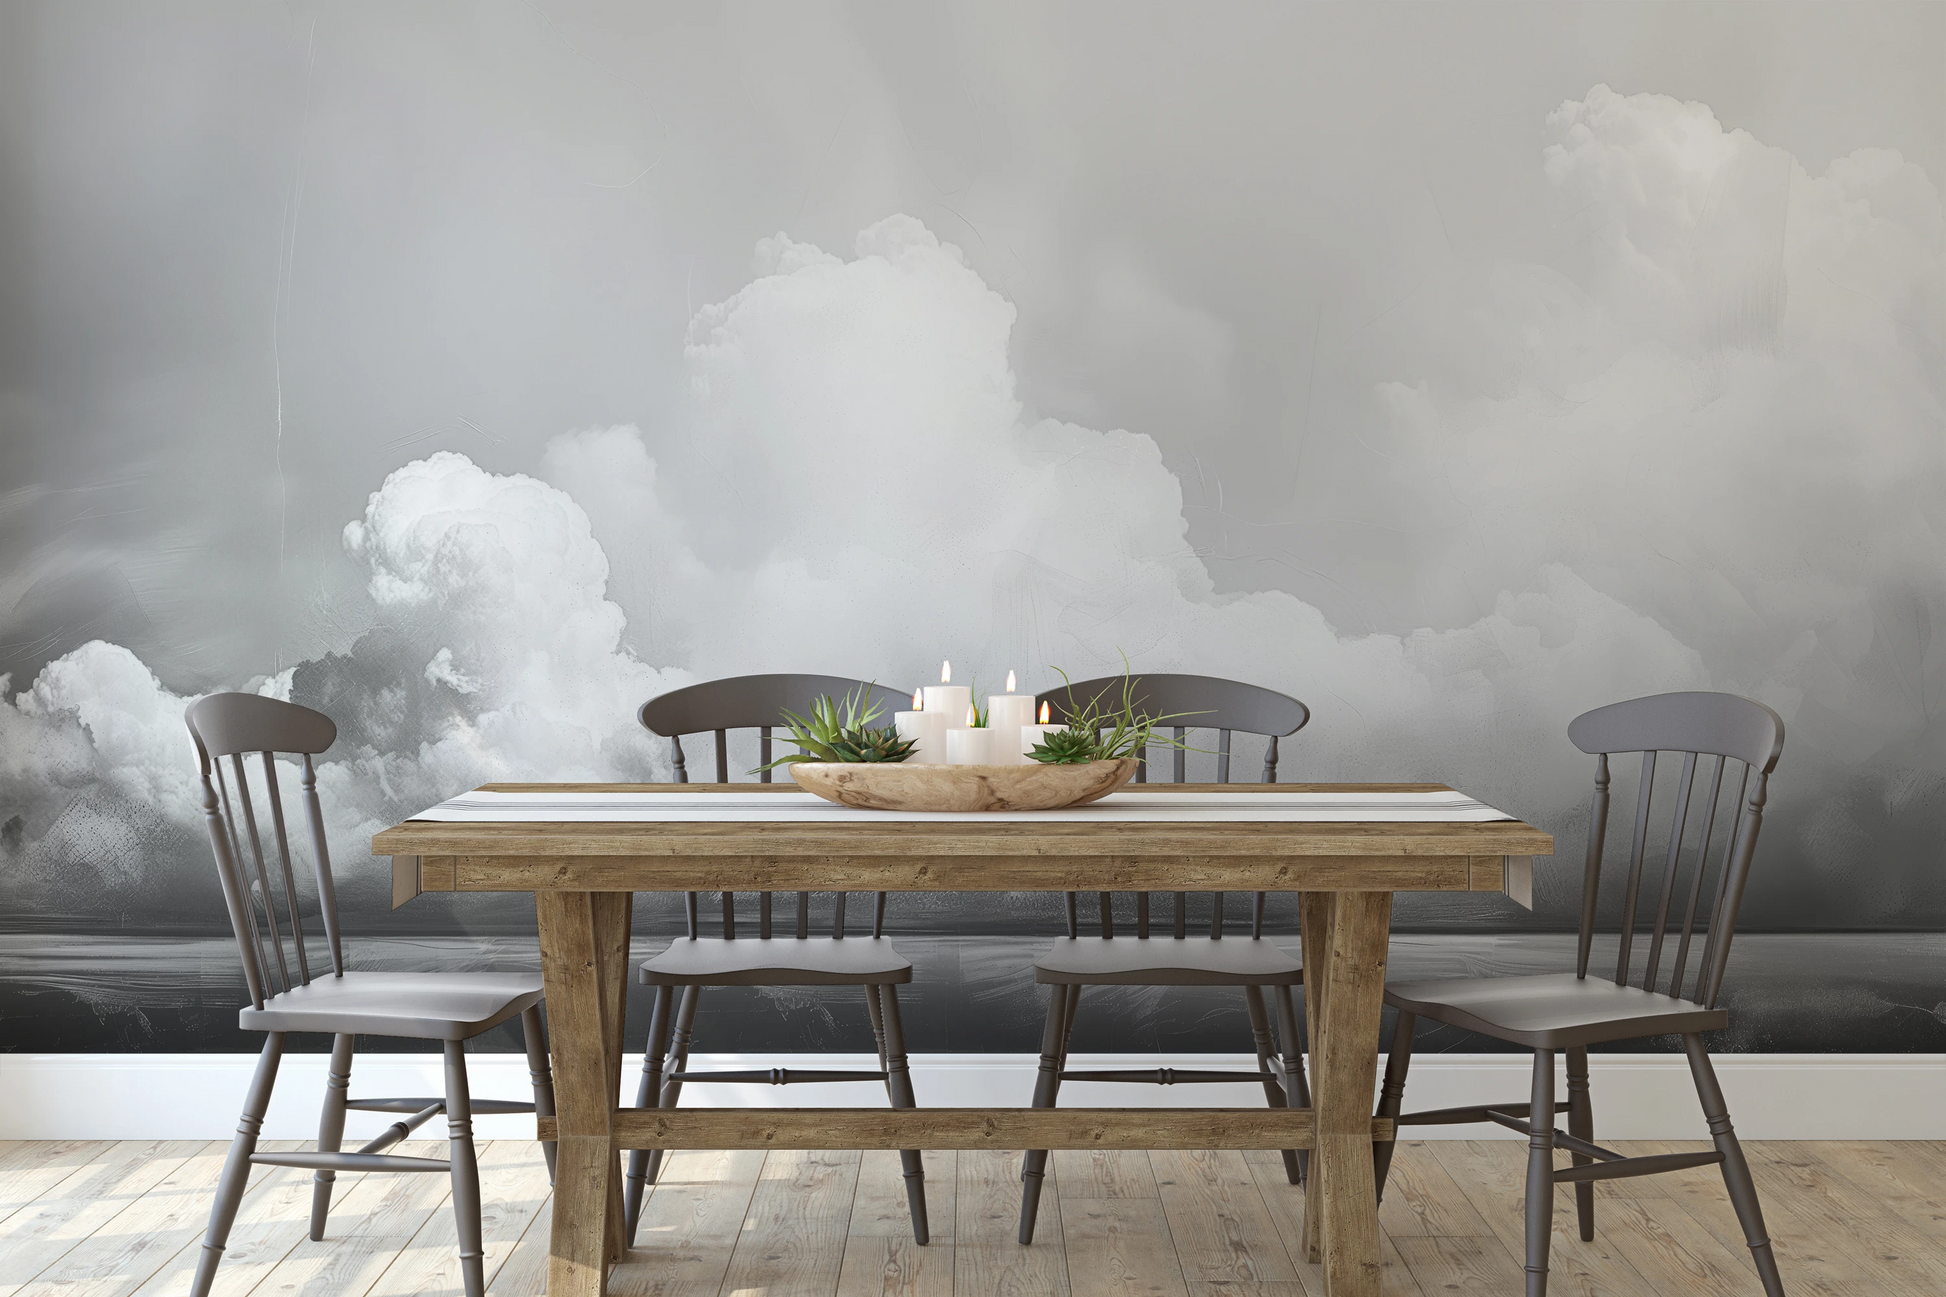 Wzór fototapety malowanej o nazwie Clouds of Tranquility pokazanej w aranżacji wnętrza.